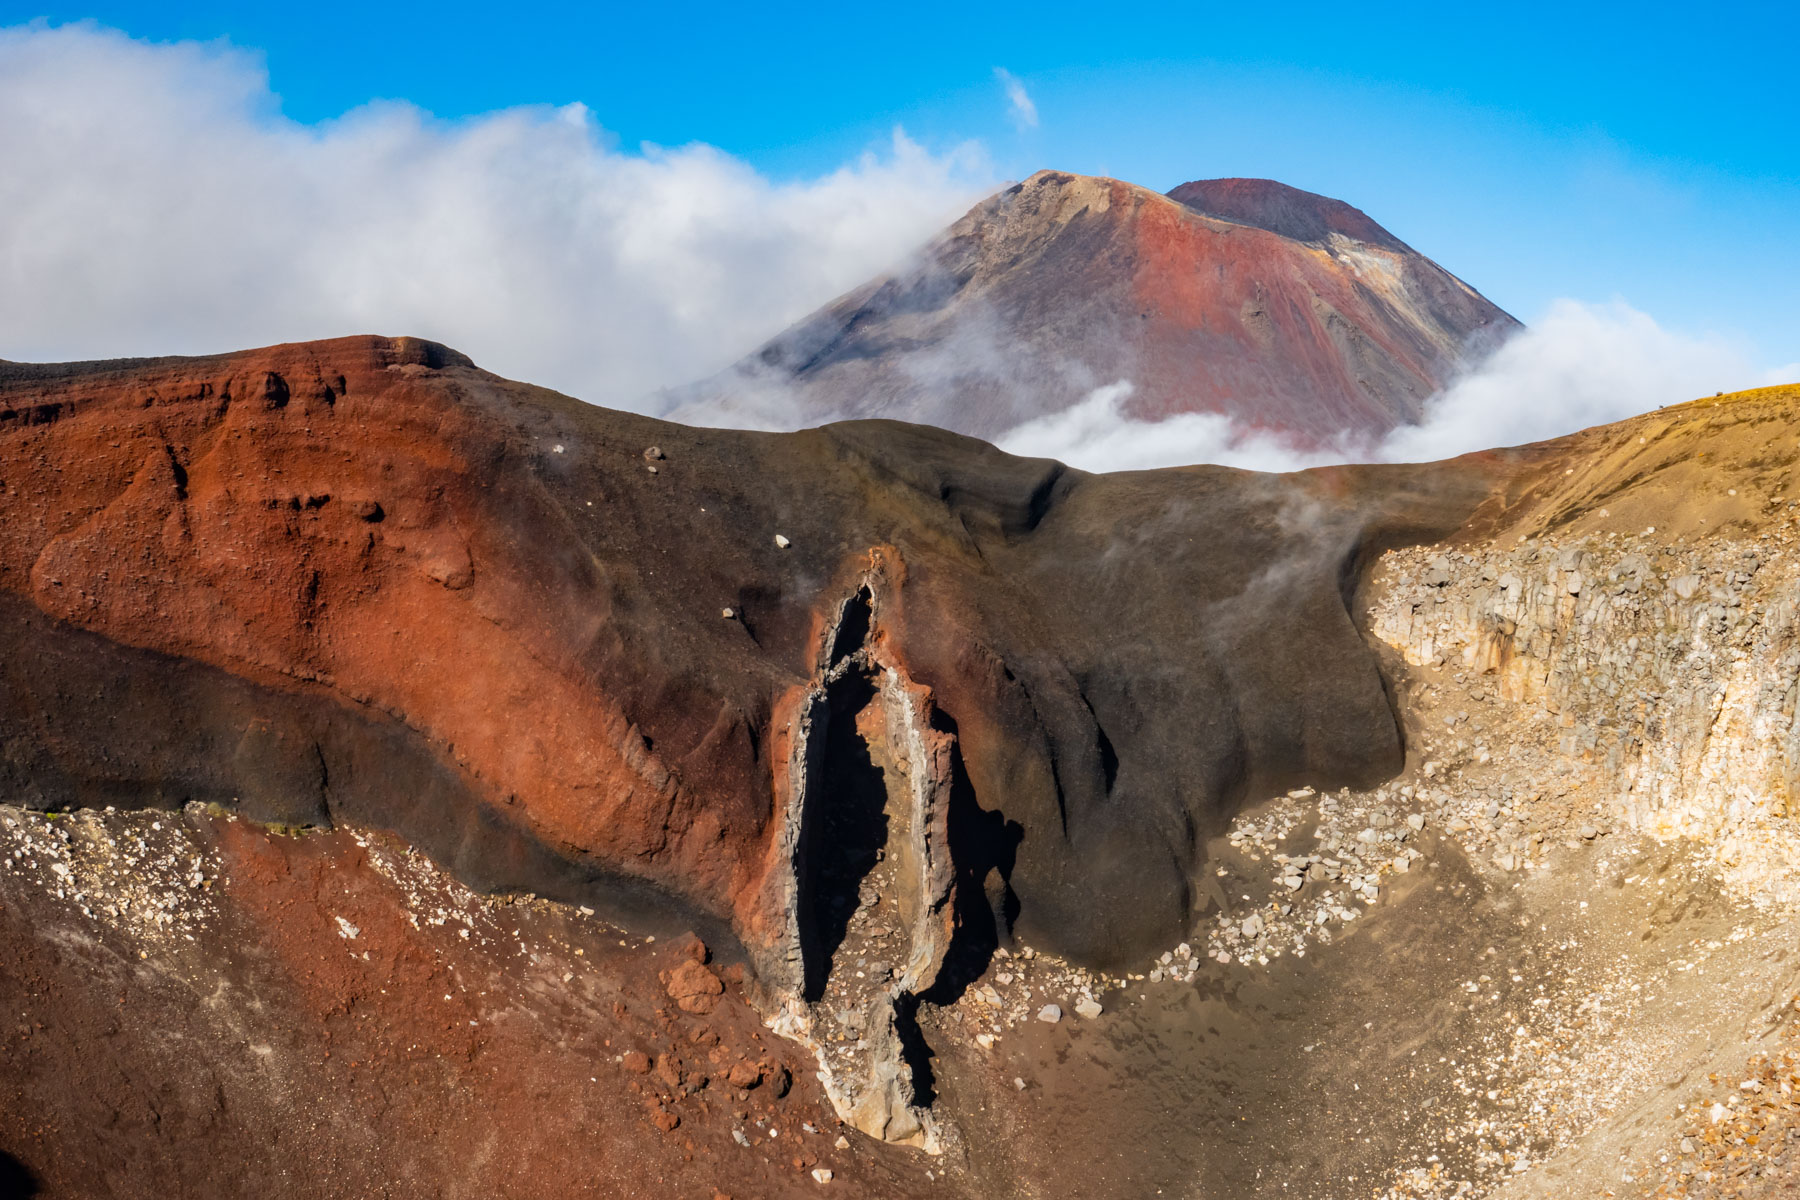 Impressionnant paysage rouge avec une curieuse formation rocheuse et le cratère du volcan Ngauruhoe.